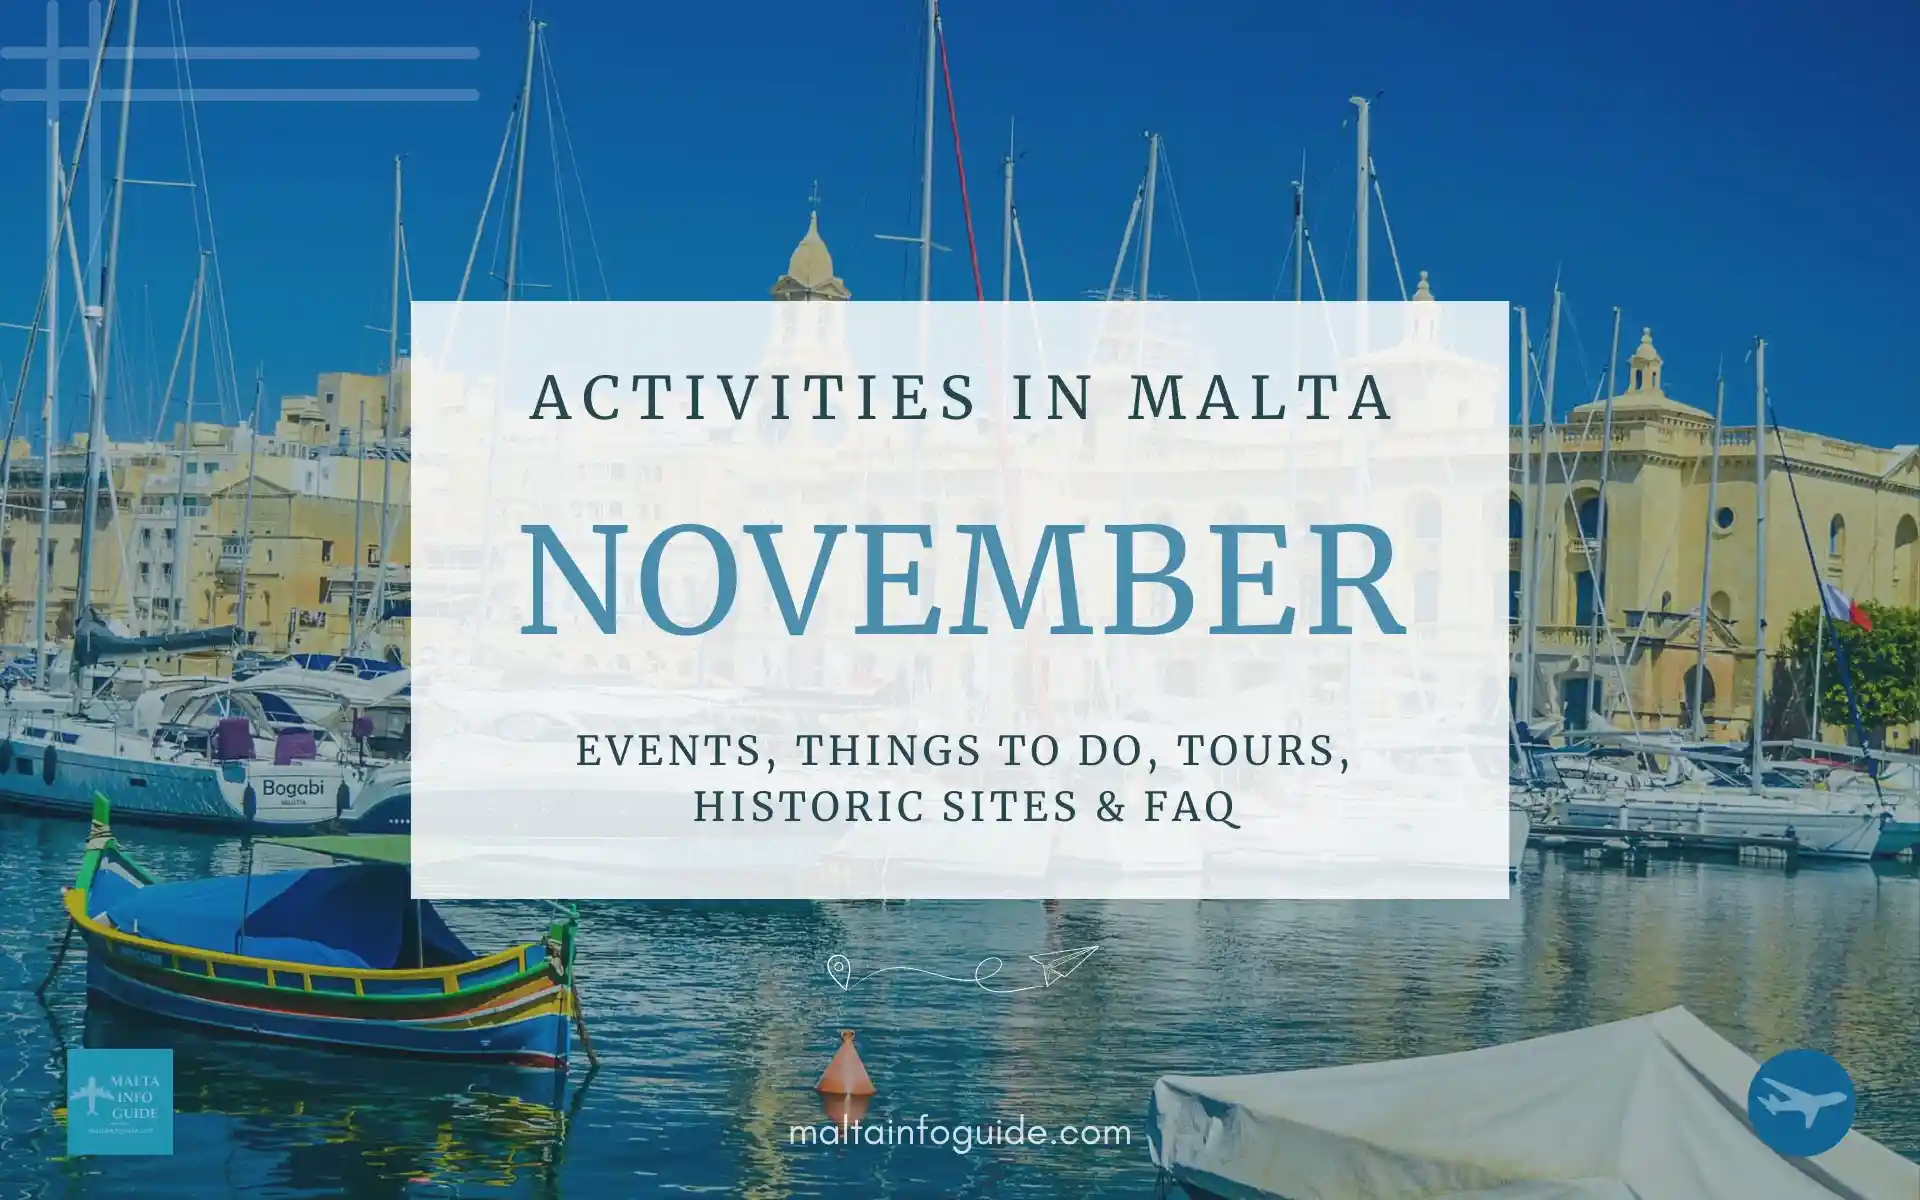 Activities in Malta November.